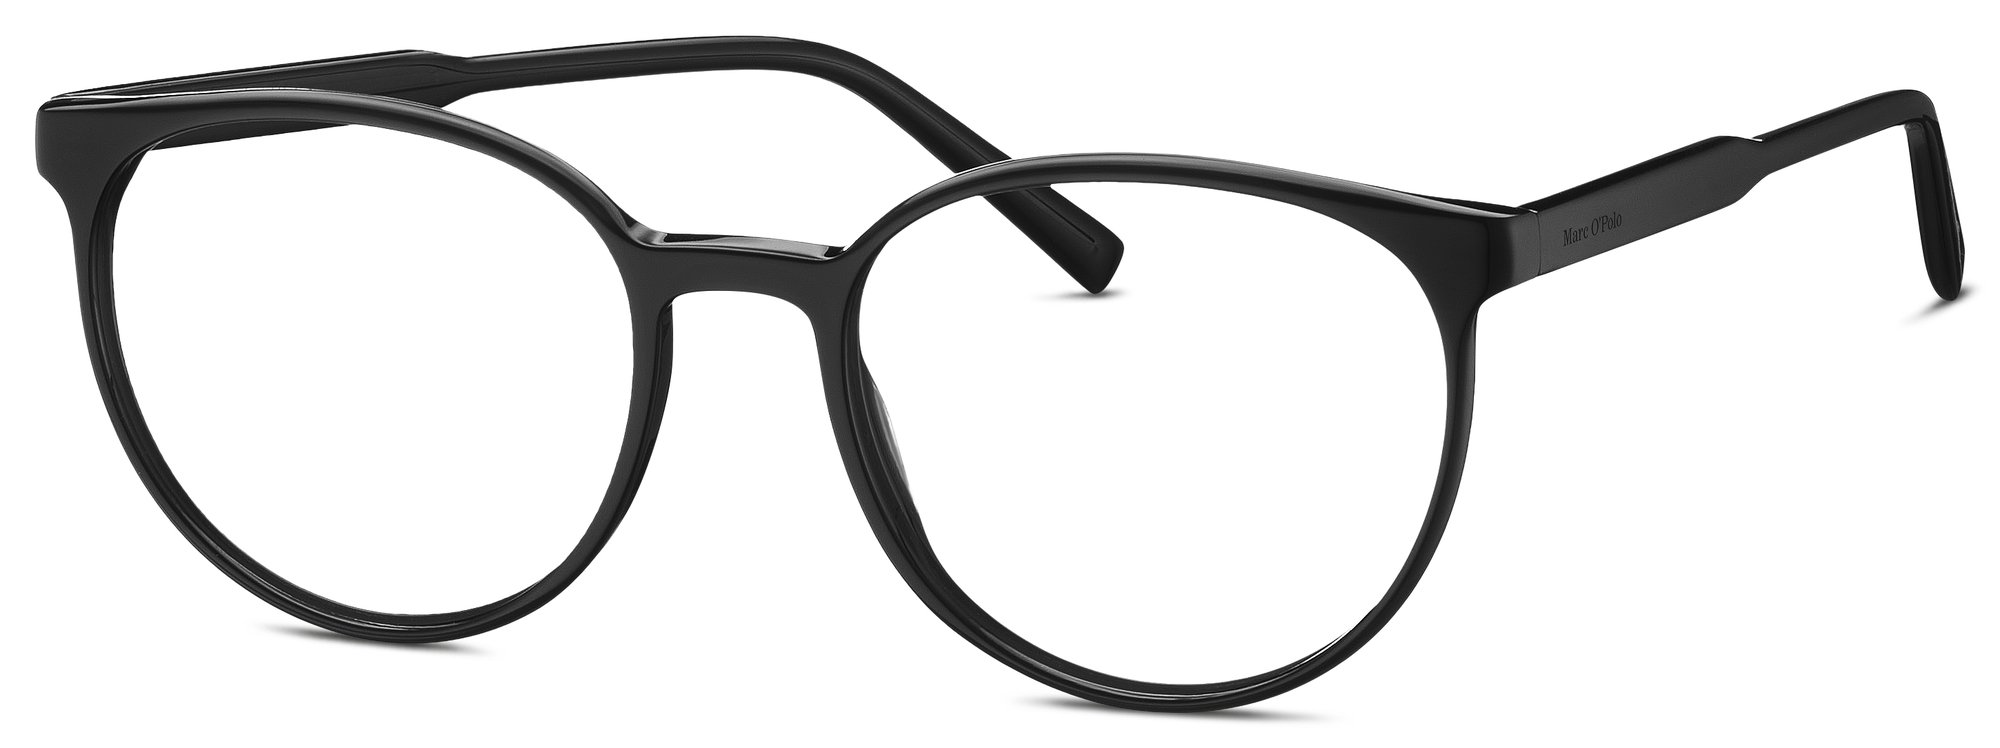 Das Bild zeigt die Korrektionsbrille  503221 10 5318 von der Marke Marc  ó Polo in der Farbe  schwarz.